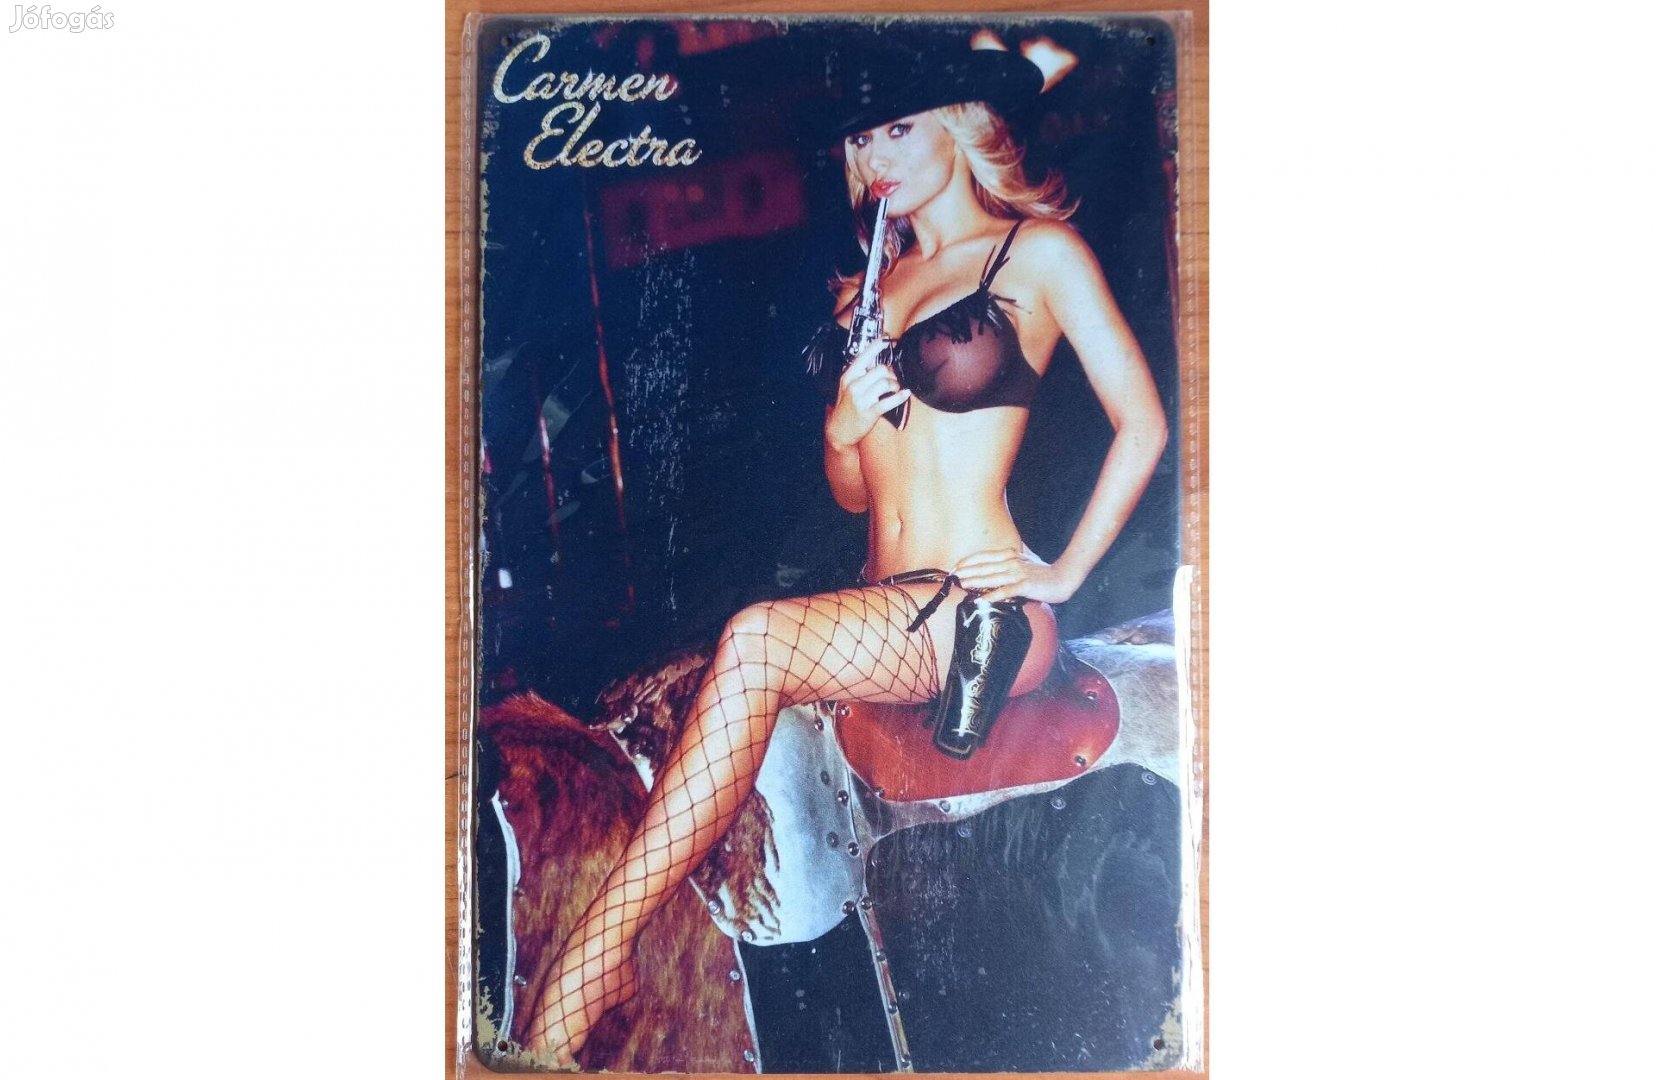 Dekorációs fém tábla (Carmen Electra)